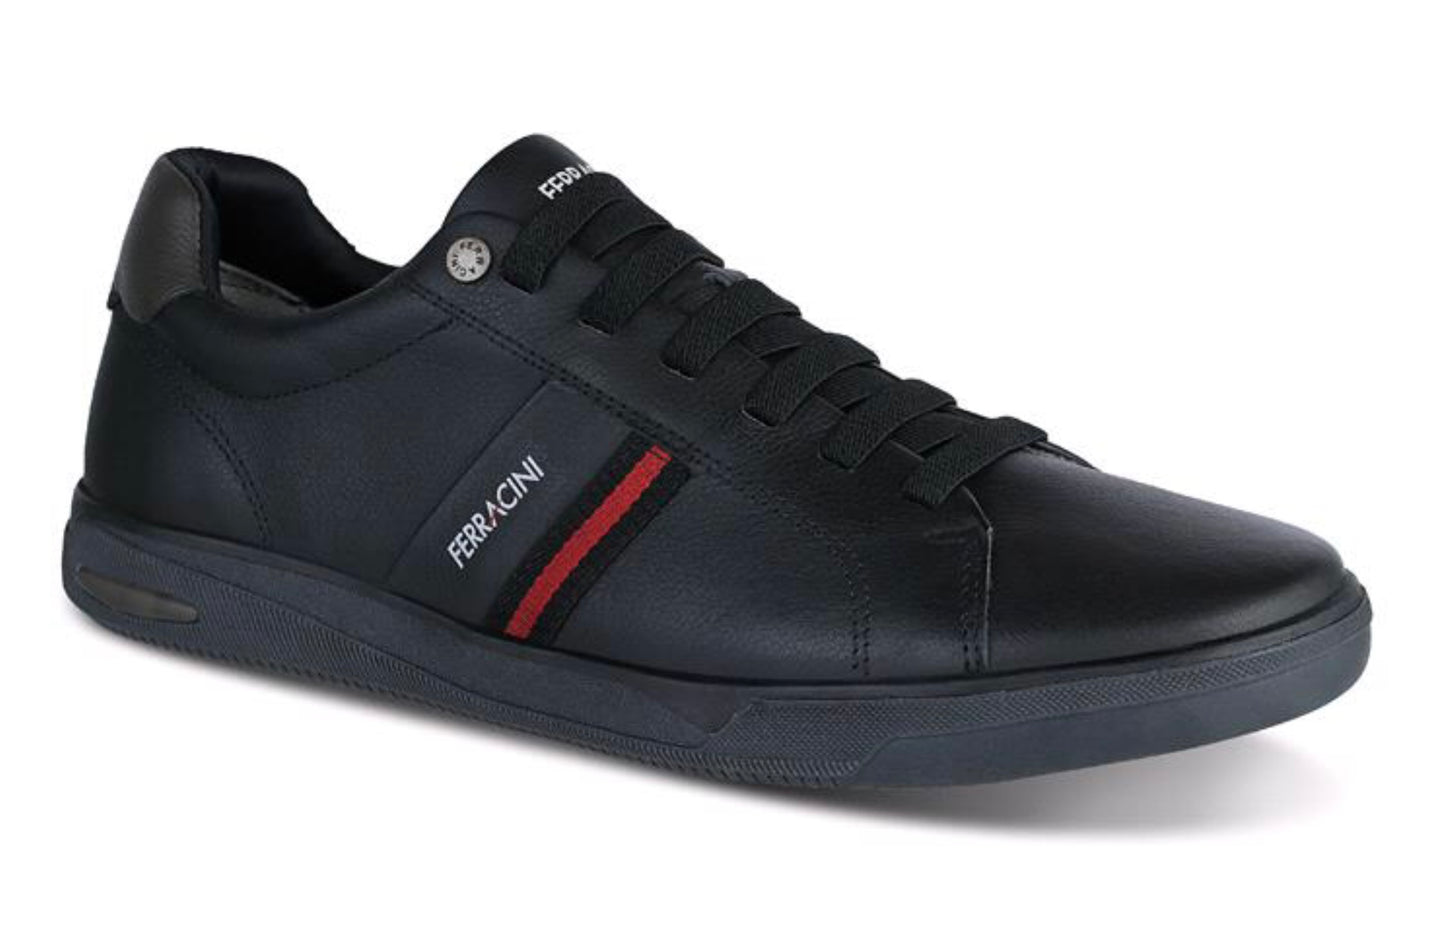 Ferracini Display BA Men's Leather Sneakers 8514